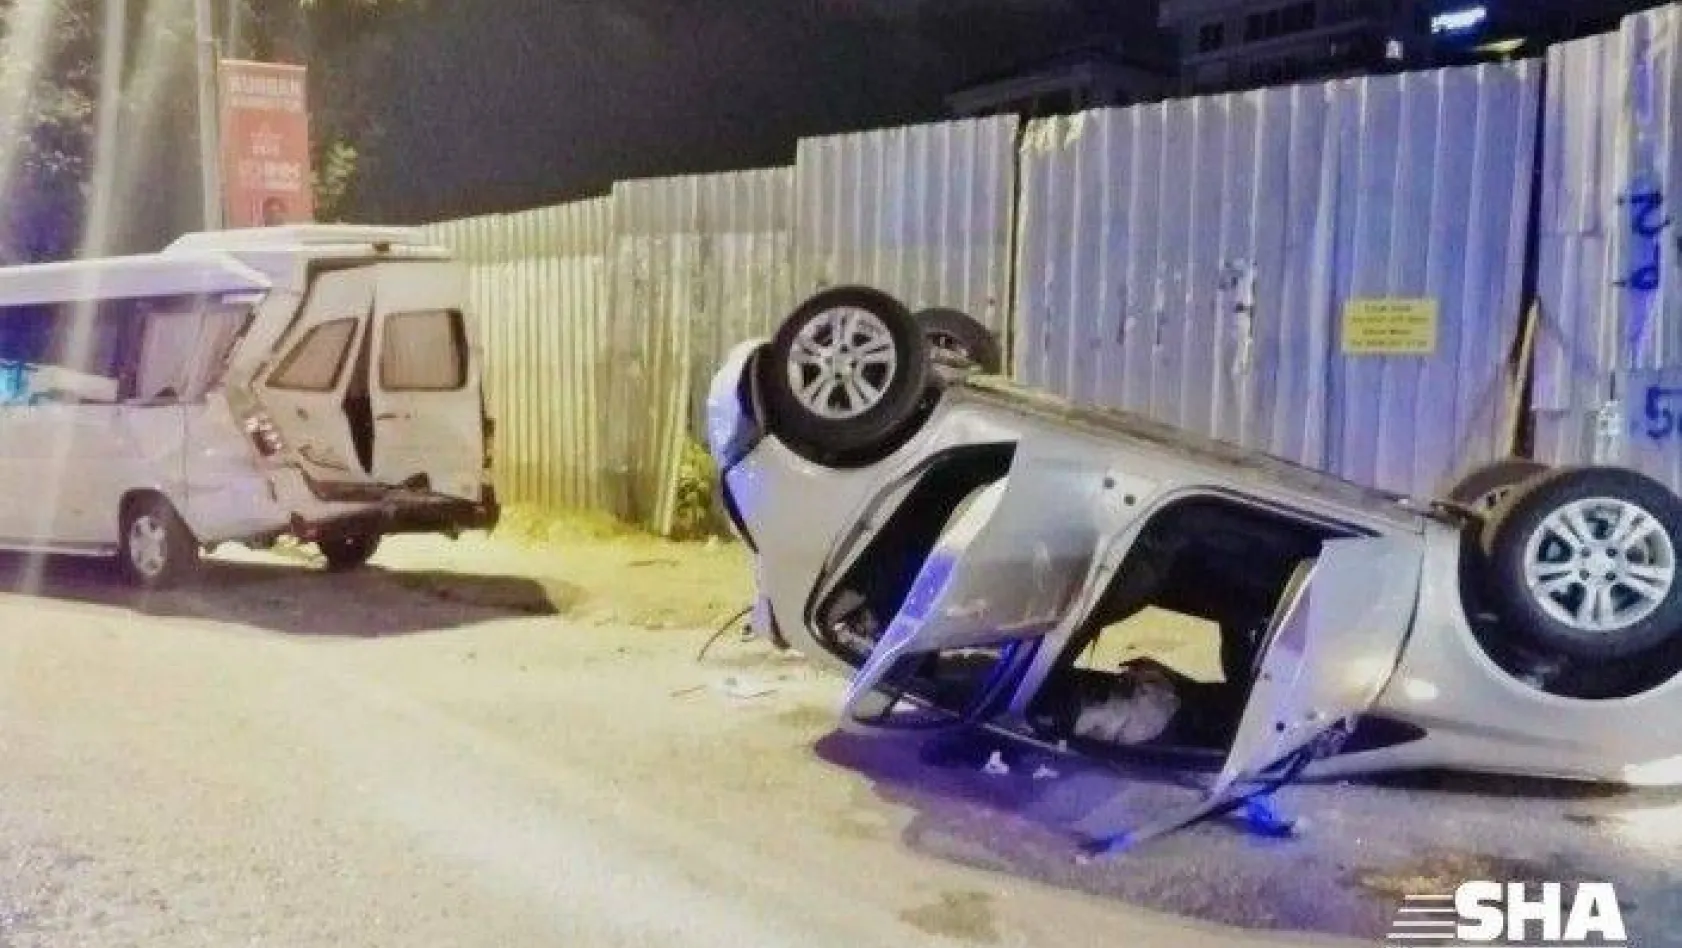 Maltepe sahil yolunda takla atan aracın sürücüsü kayıplara karıştı: 3 kişi yaralandı